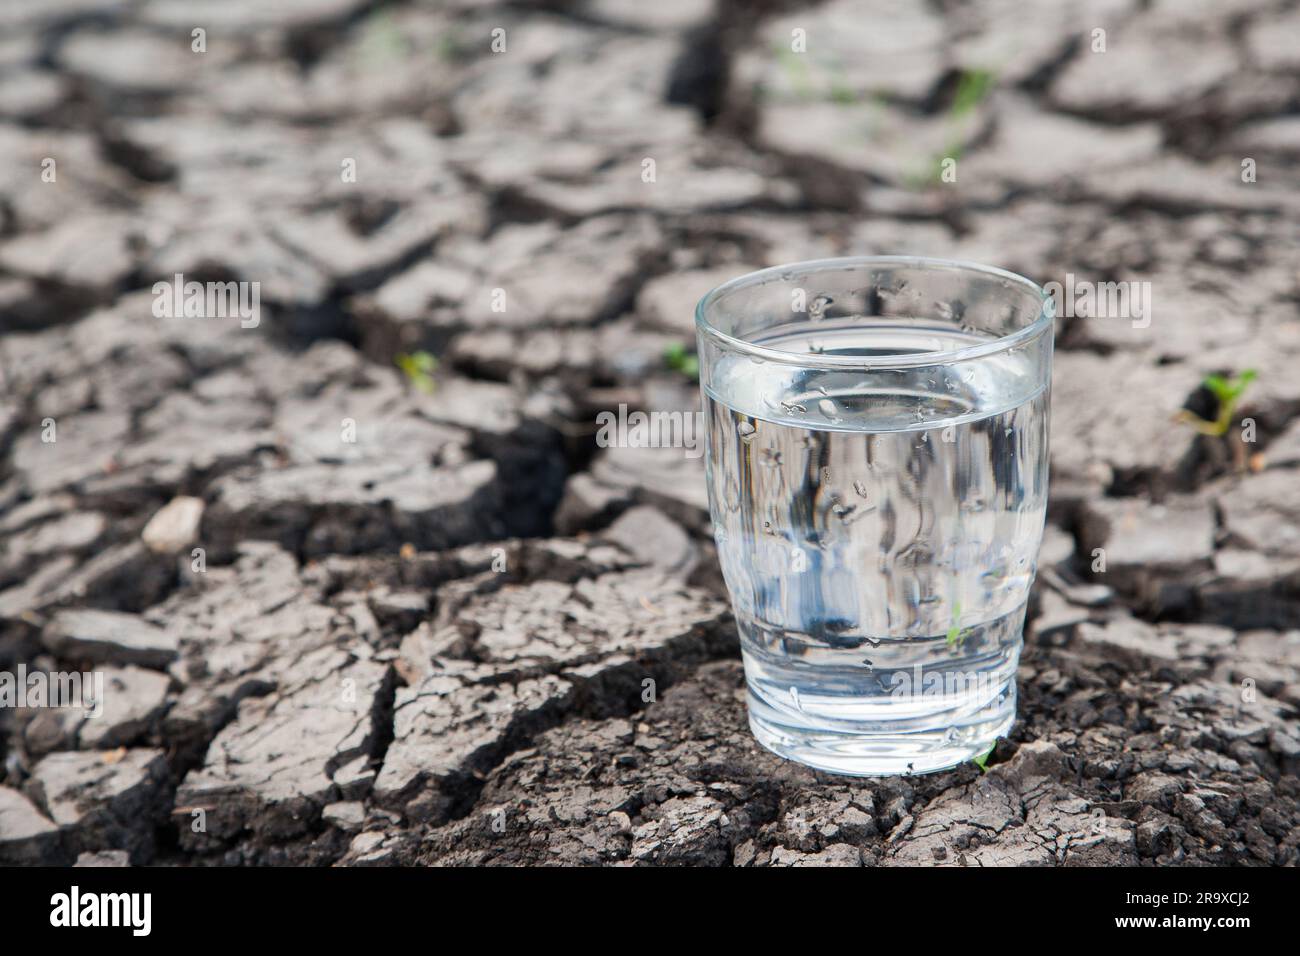 Un bicchiere d'acqua si trova su un terreno asciutto. Stiamo per affrontare un grave problema di acqua potabile? A causa del clima, i periodi secchi in Europa e G. Foto Stock